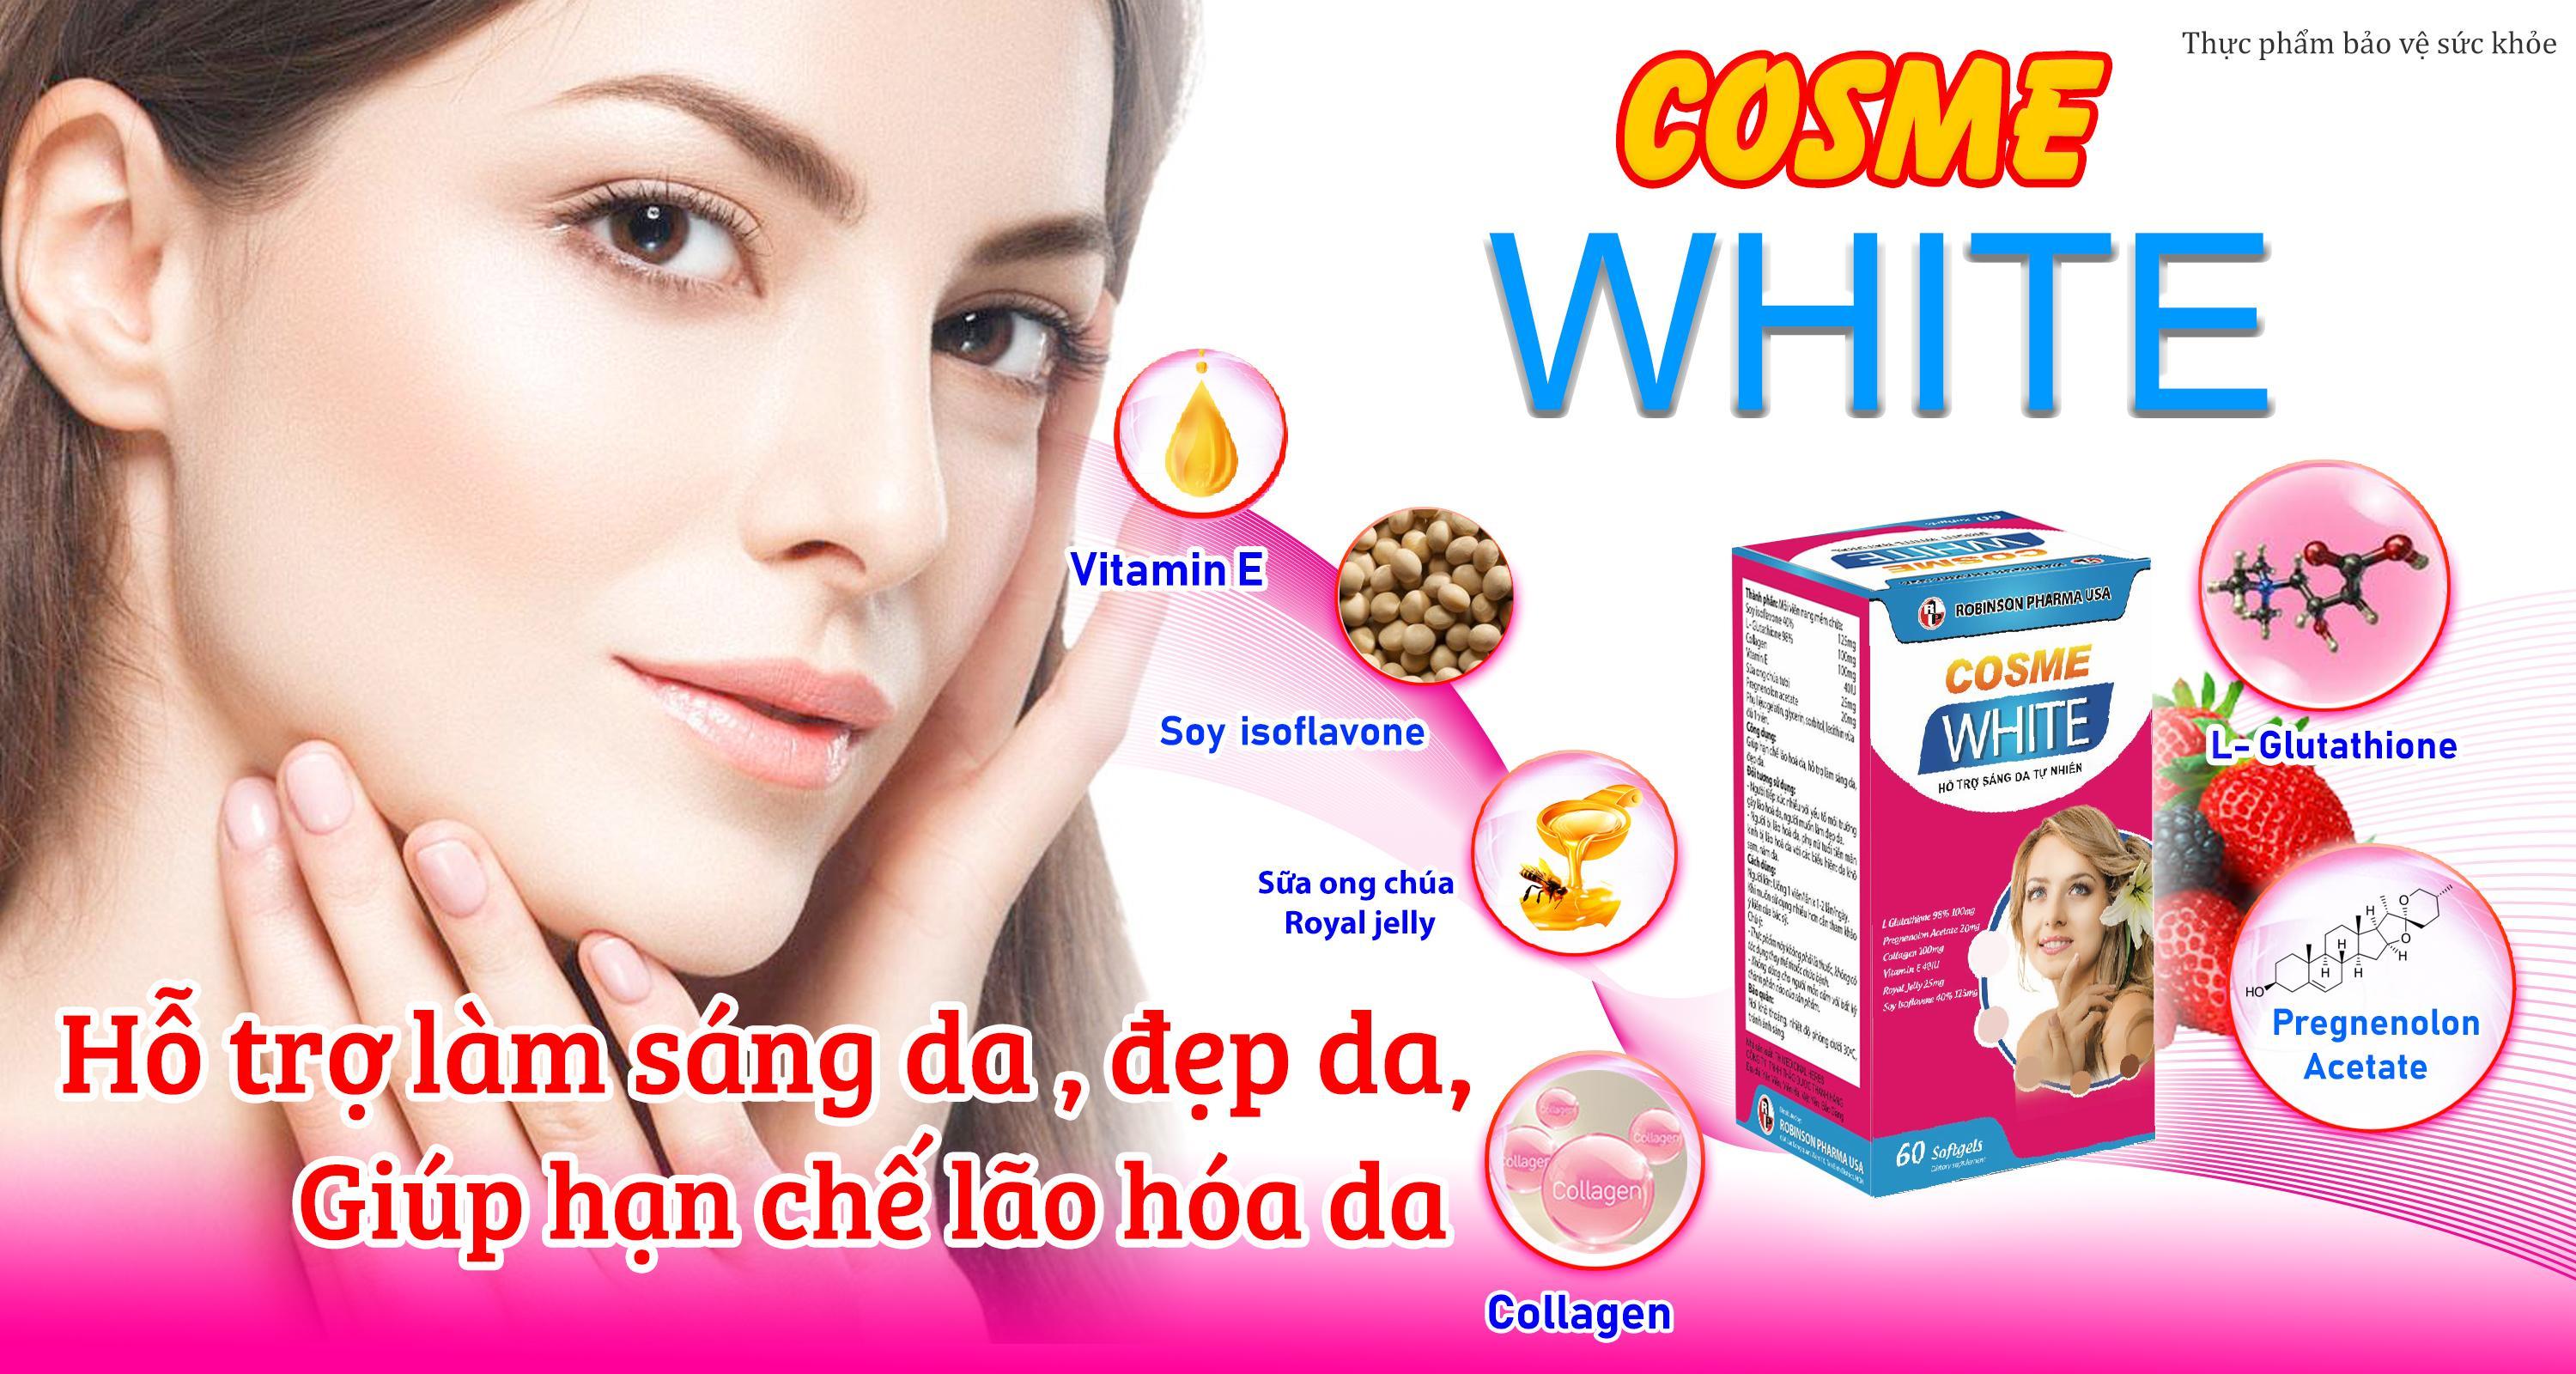 TPCN- Robinson Pharma USA- Cosme white - Viên uống dưỡng trắng da, mặt, body, mờ thâm, nám, trắng sáng toàn thân tự nhiên (60 viên)